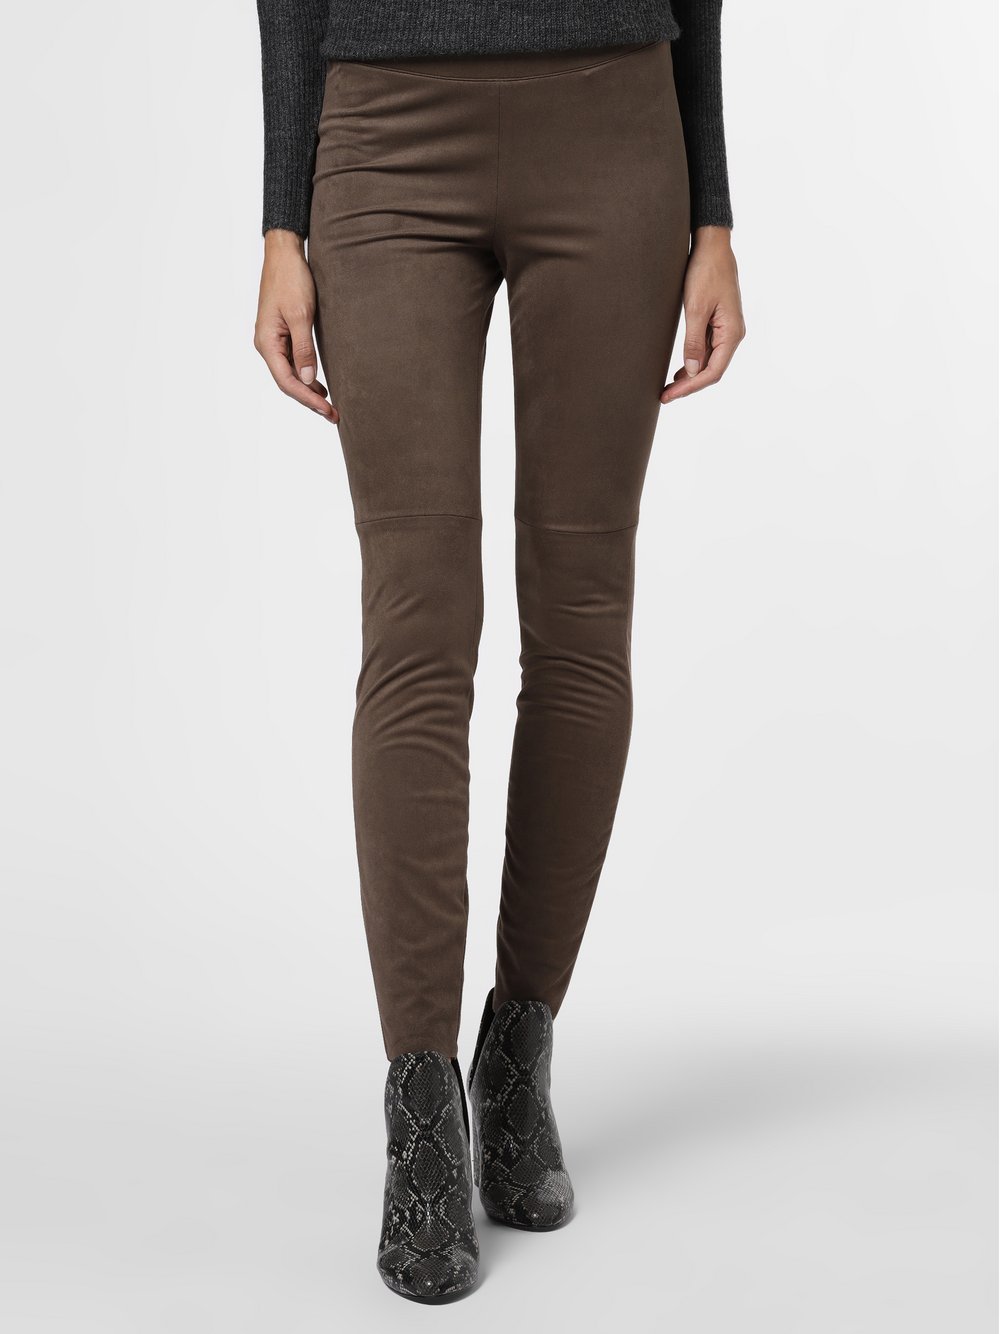 Cambio - Damskie spodnie – Randa, brązowy